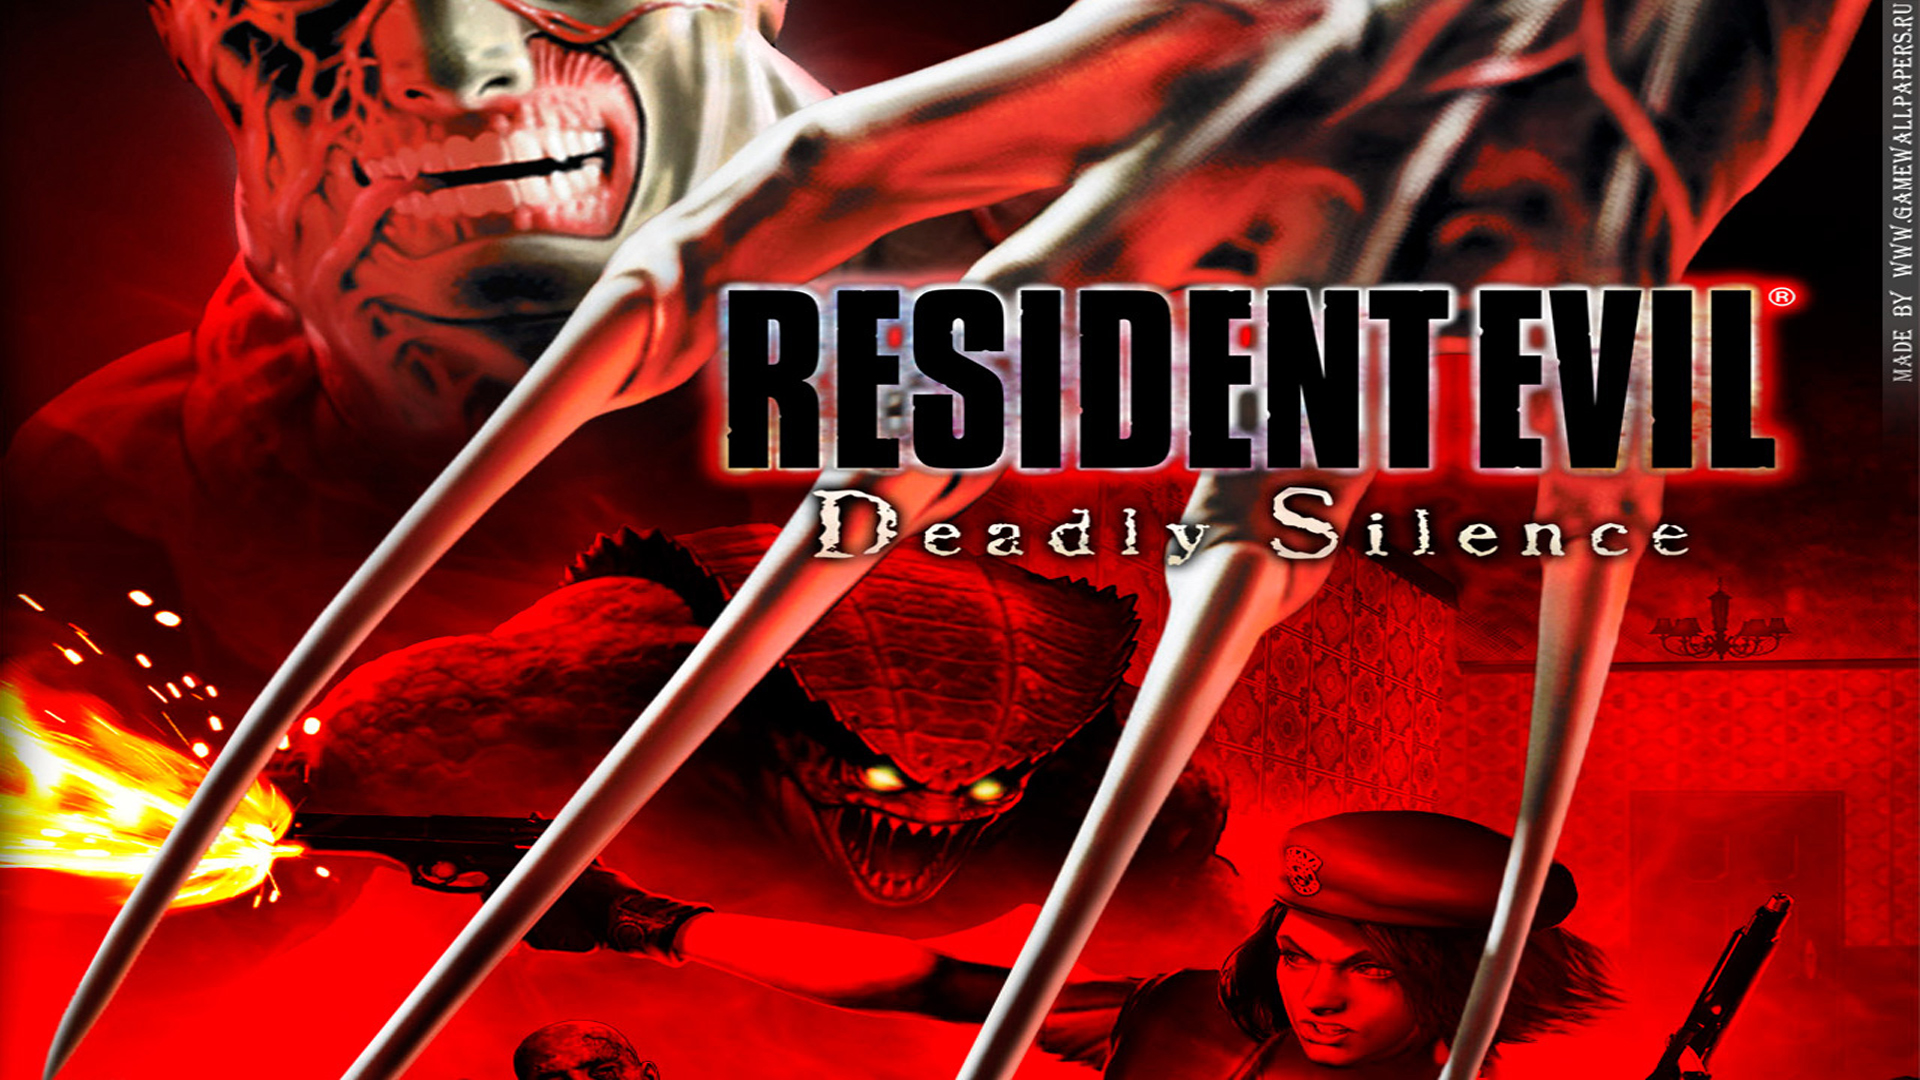 resident evil: deadly silence, video game, resident evil lock screen backgrounds